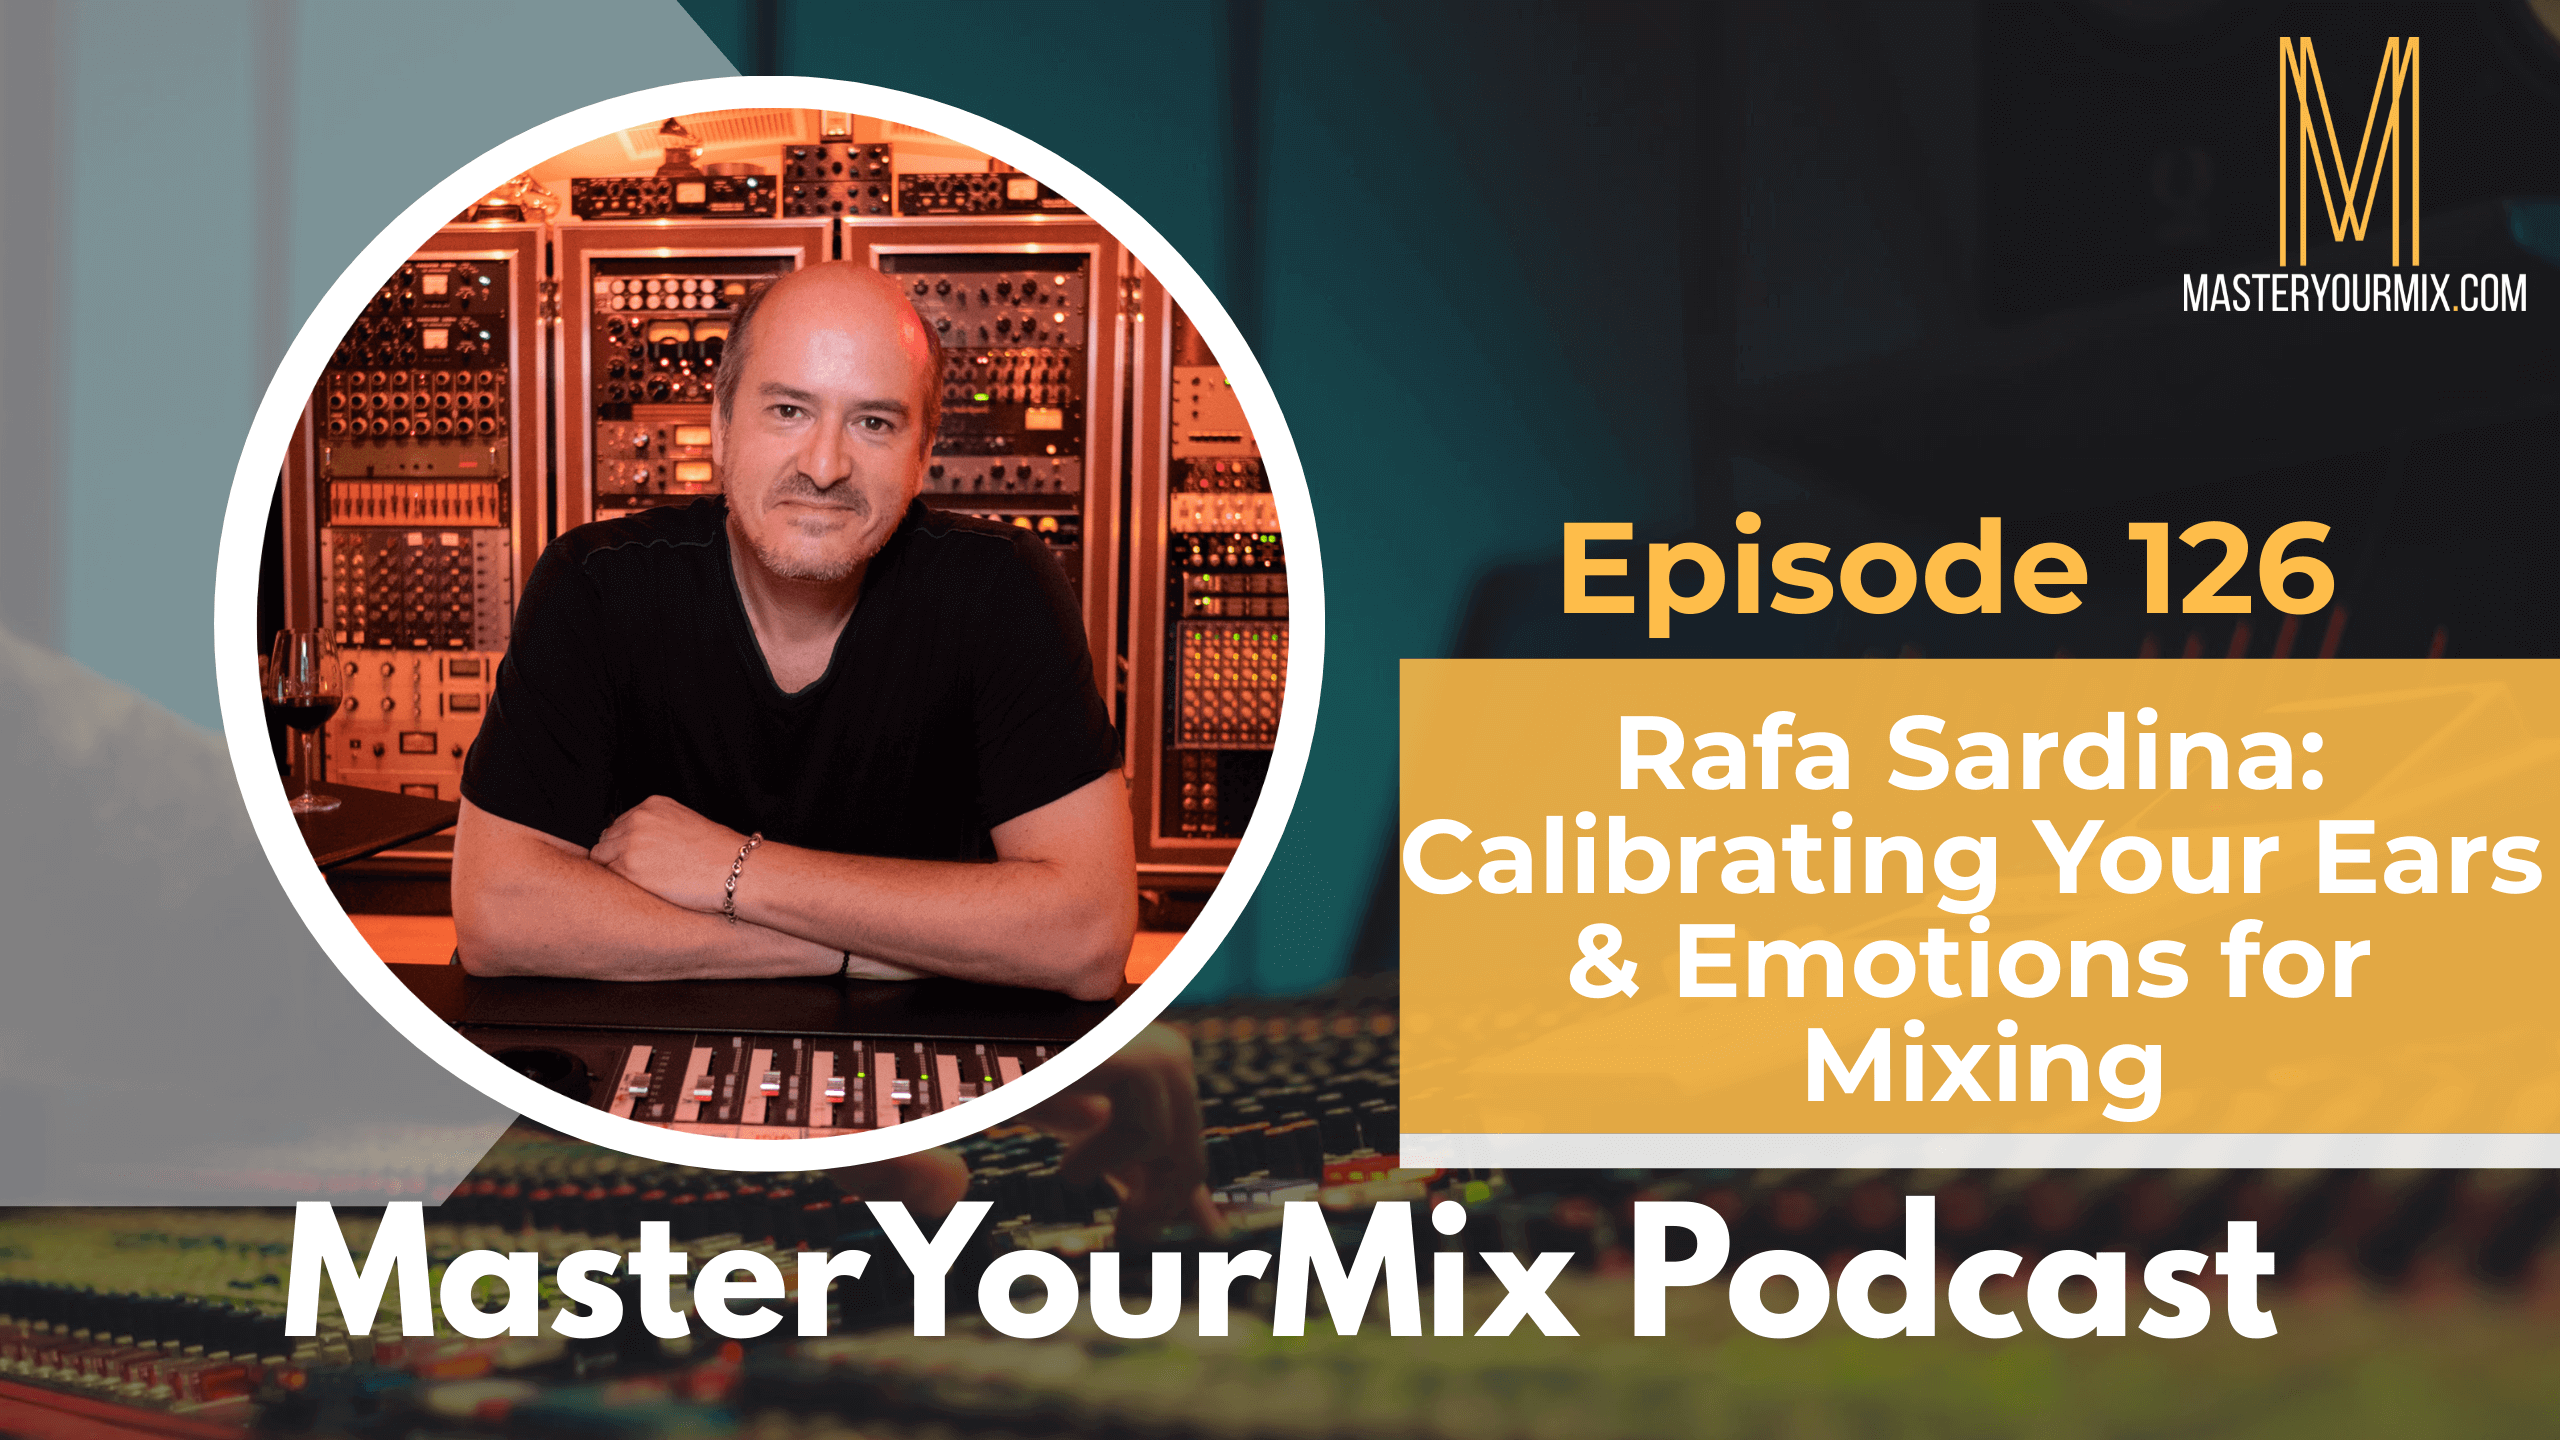 master your mix podcast, ep 126 rafa sardina